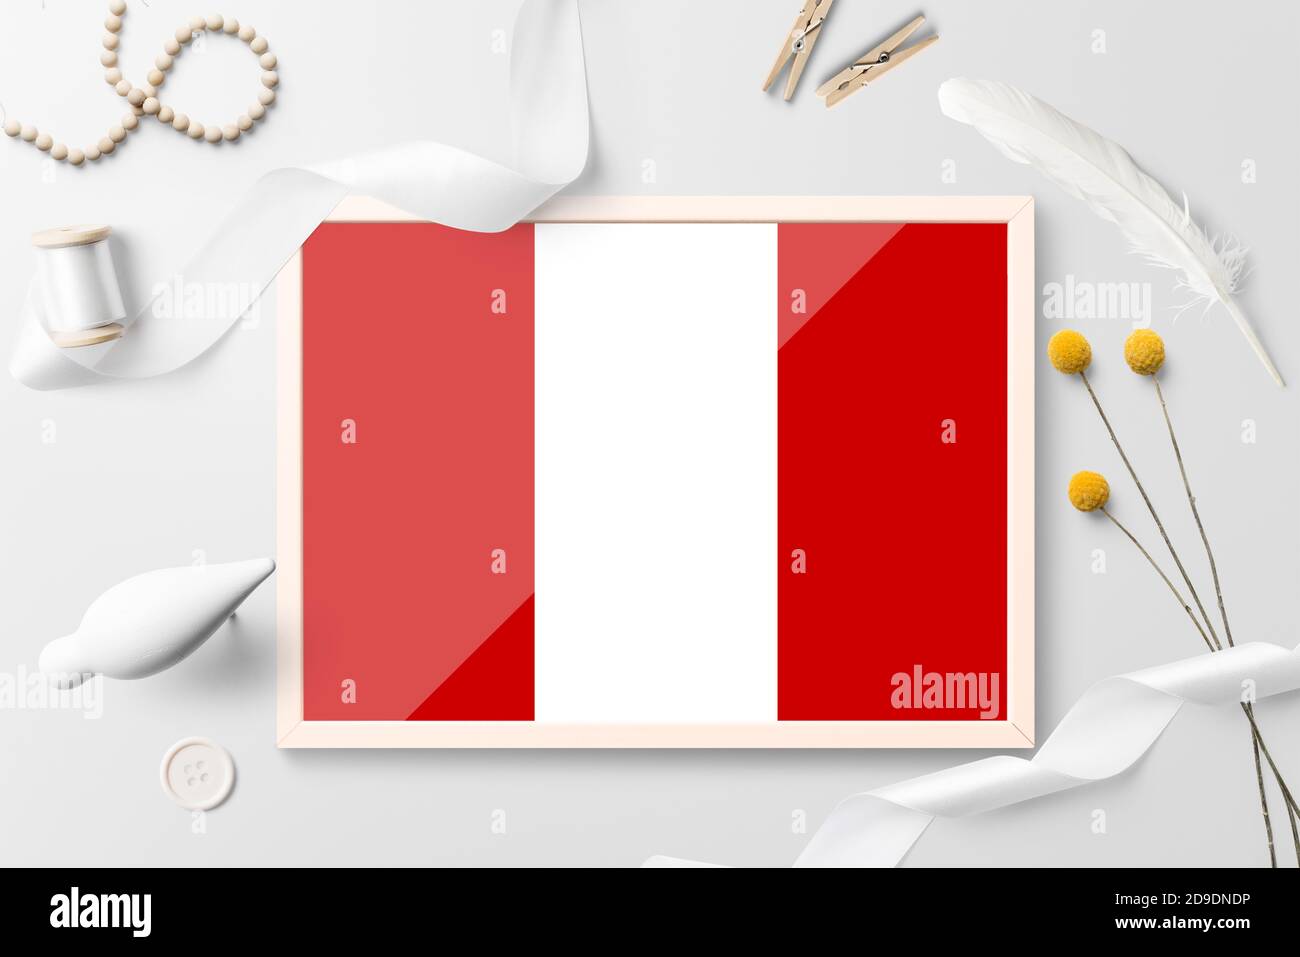 Peru Flagge in Holzrahmen auf weißem kreativen Hintergrund. Weißes Thema, Feder, Gänseblümchen, Knopf, Band-Objekte. Stockfoto